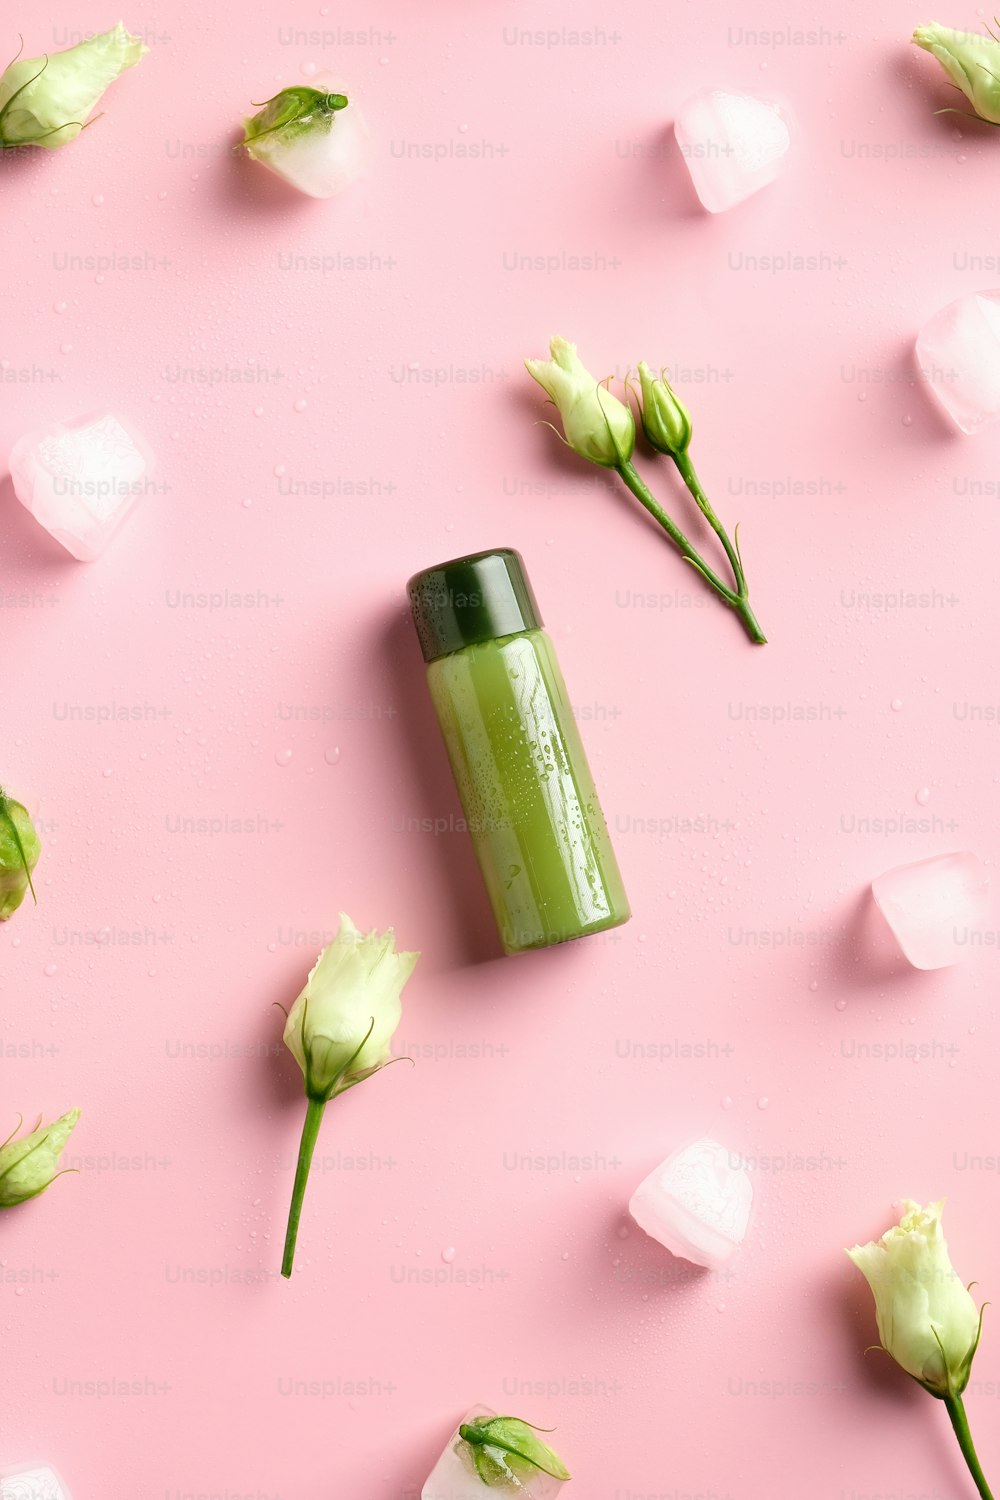 シャワー ジェル グリーン クリア化粧品ボトル、アイス キューブ、ピンクの背景に春の花。自然の美容製品。フラットレイ、トップビュー。